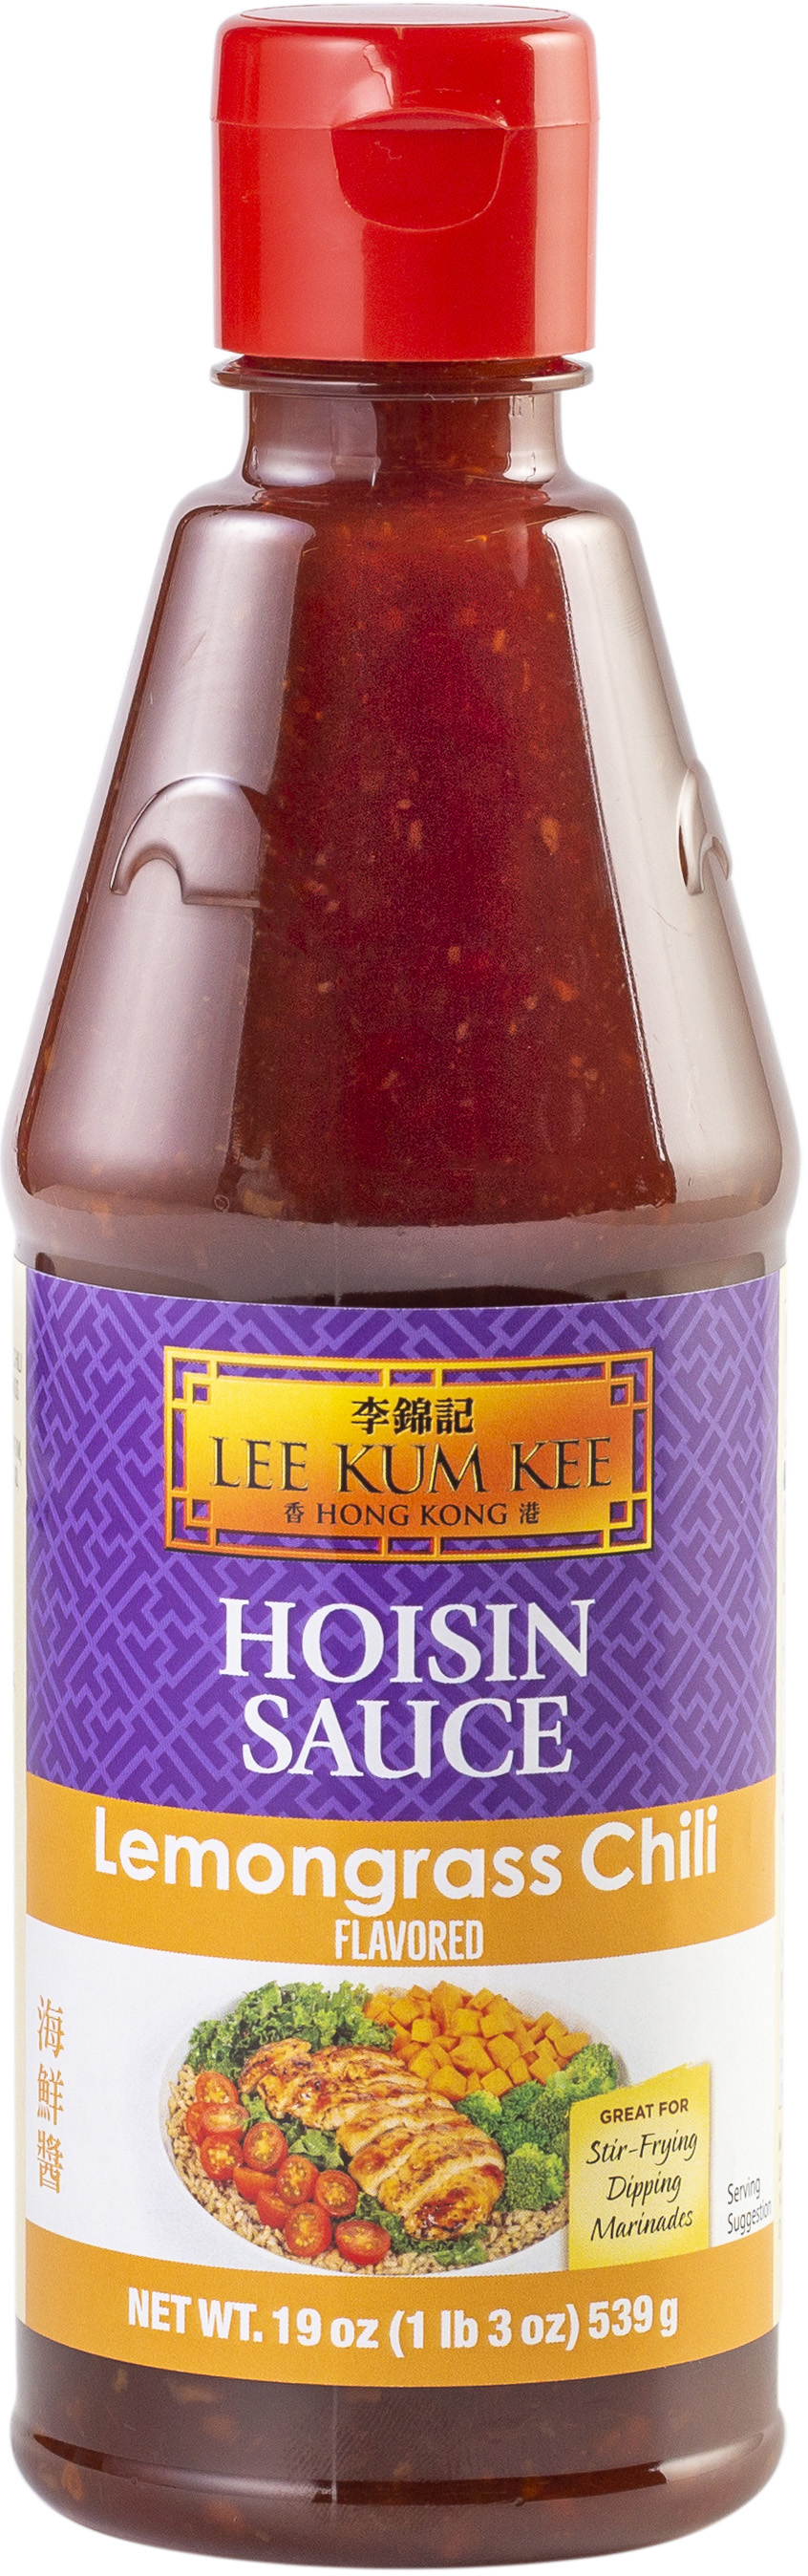 Lemongrass Chili Flavored Hoisin Sauce, Hoisin, Lee Kum Kee Home